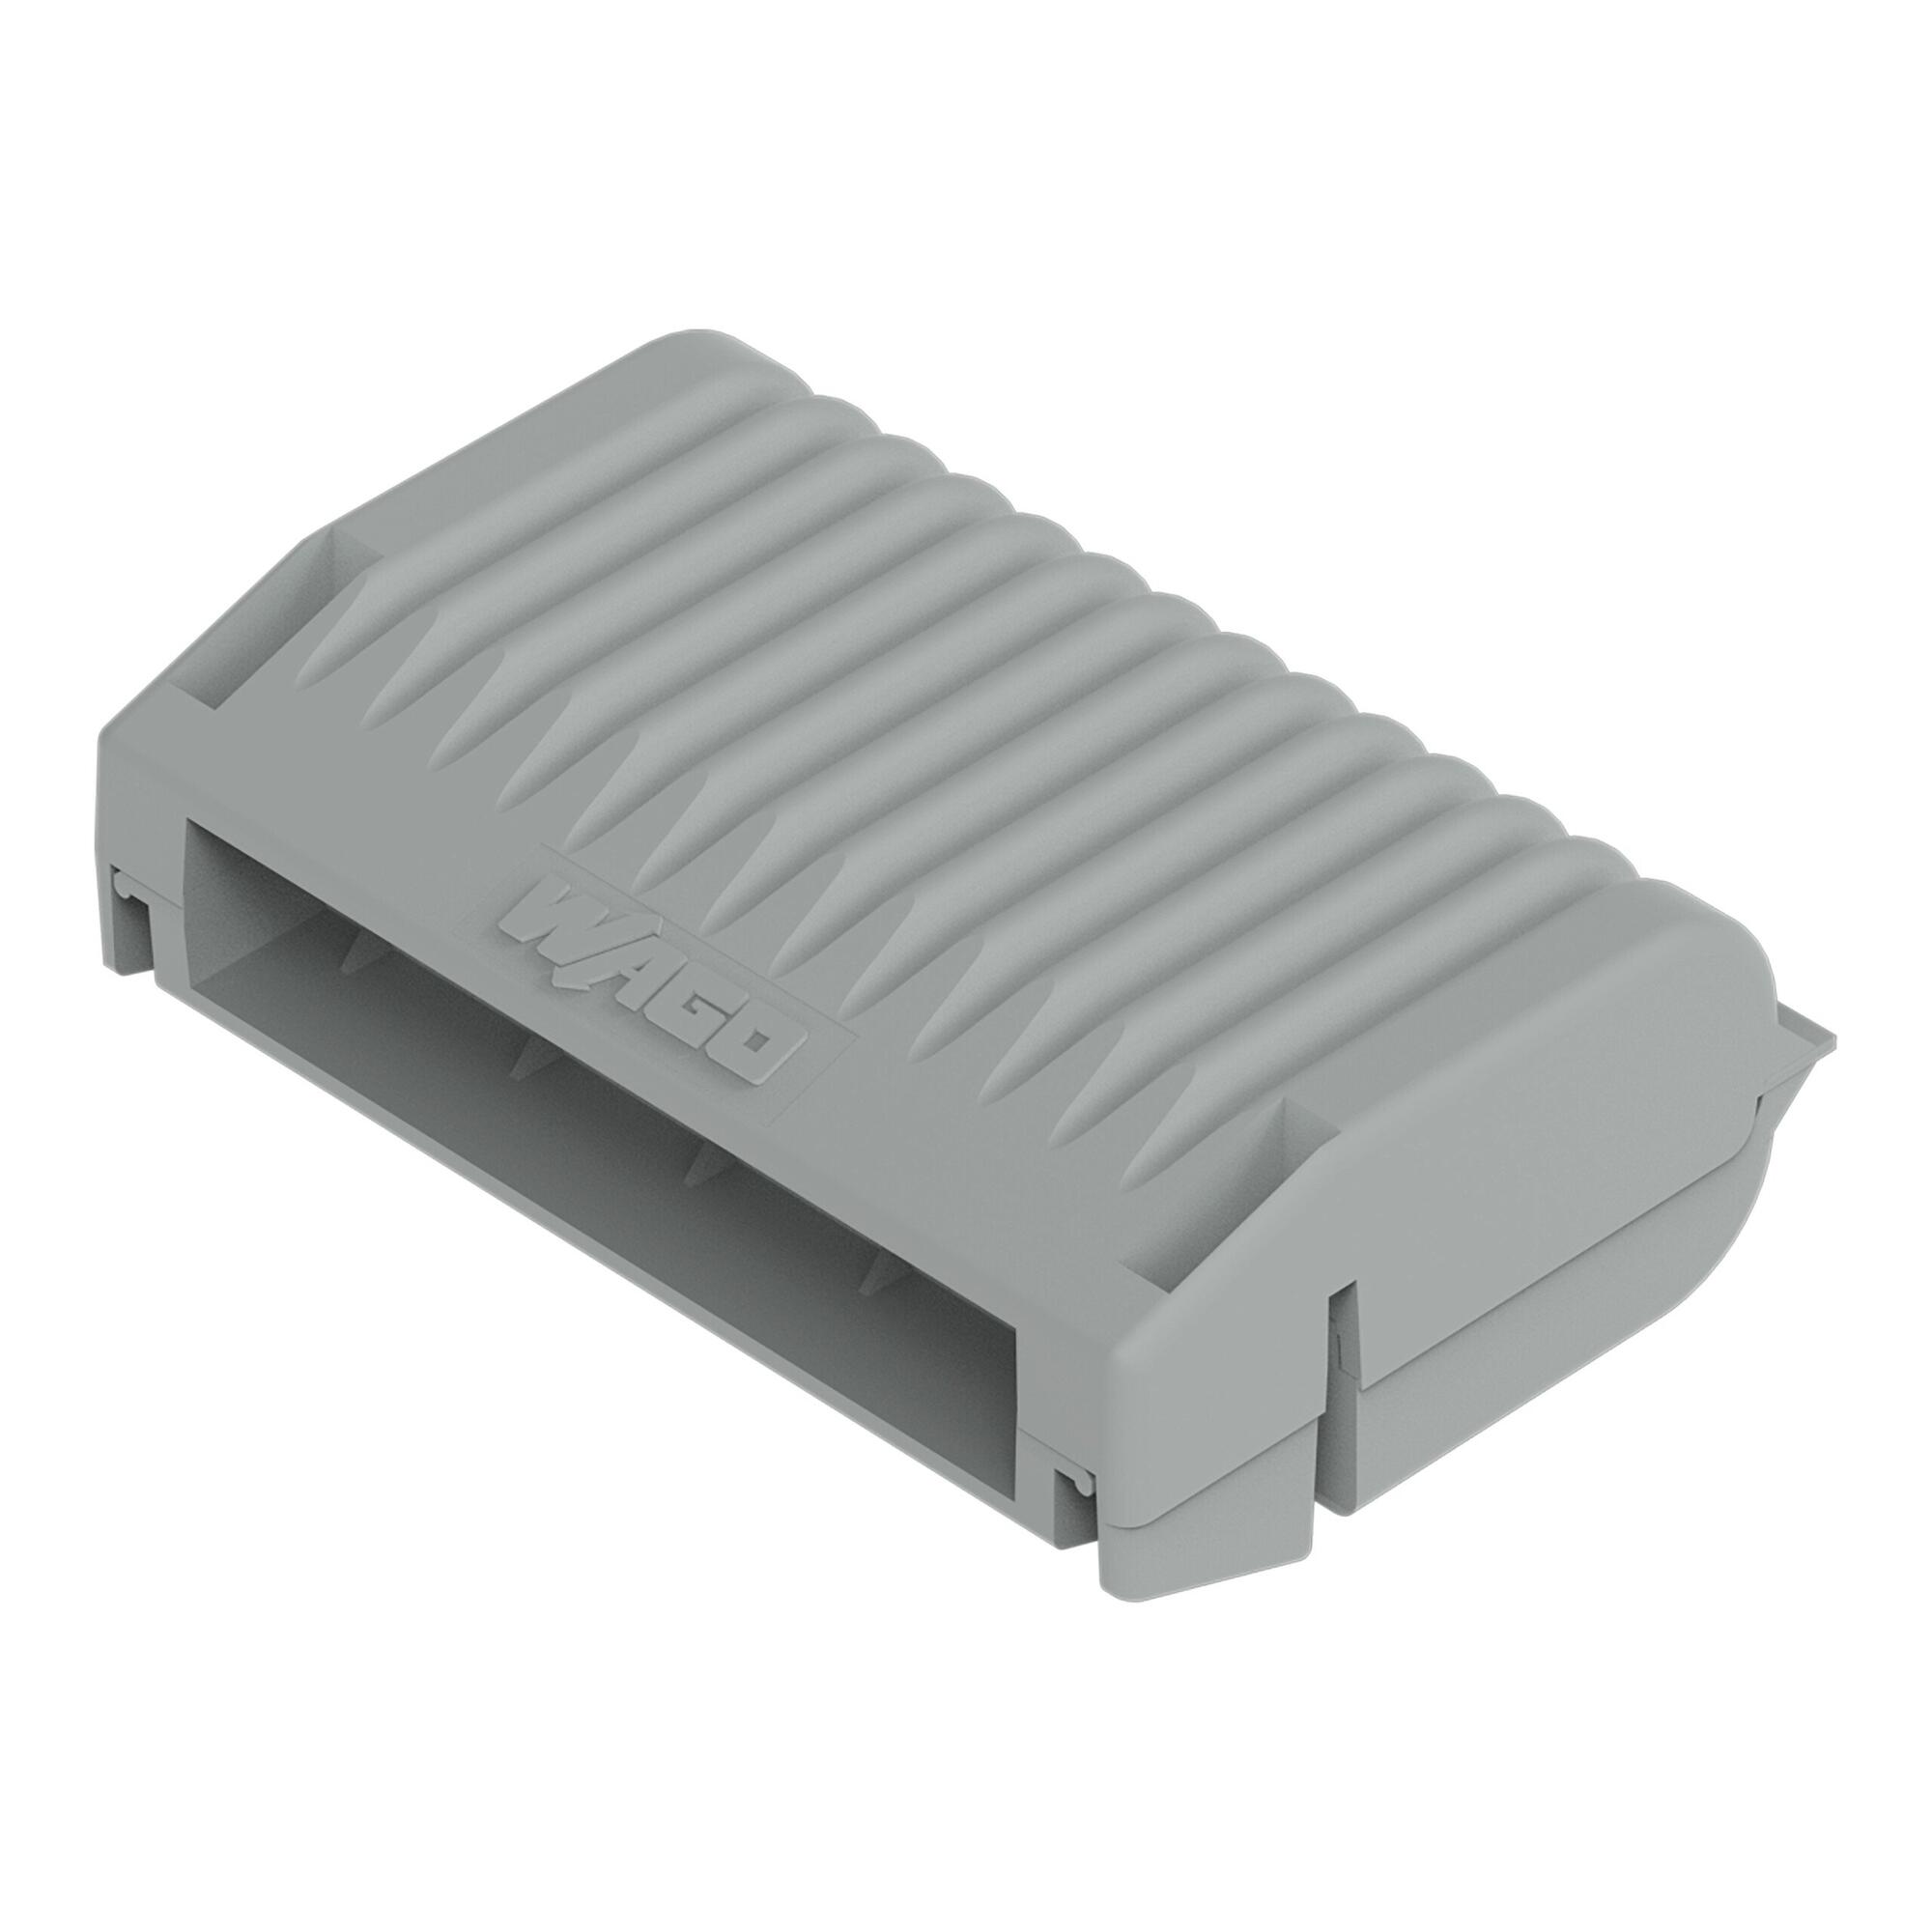 胶盒; 分支; 适于电缆; 带有凝胶; 221, 2x73 系列; 最大4 mm²连接器; 不带导线连接器; Size 3; 灰色